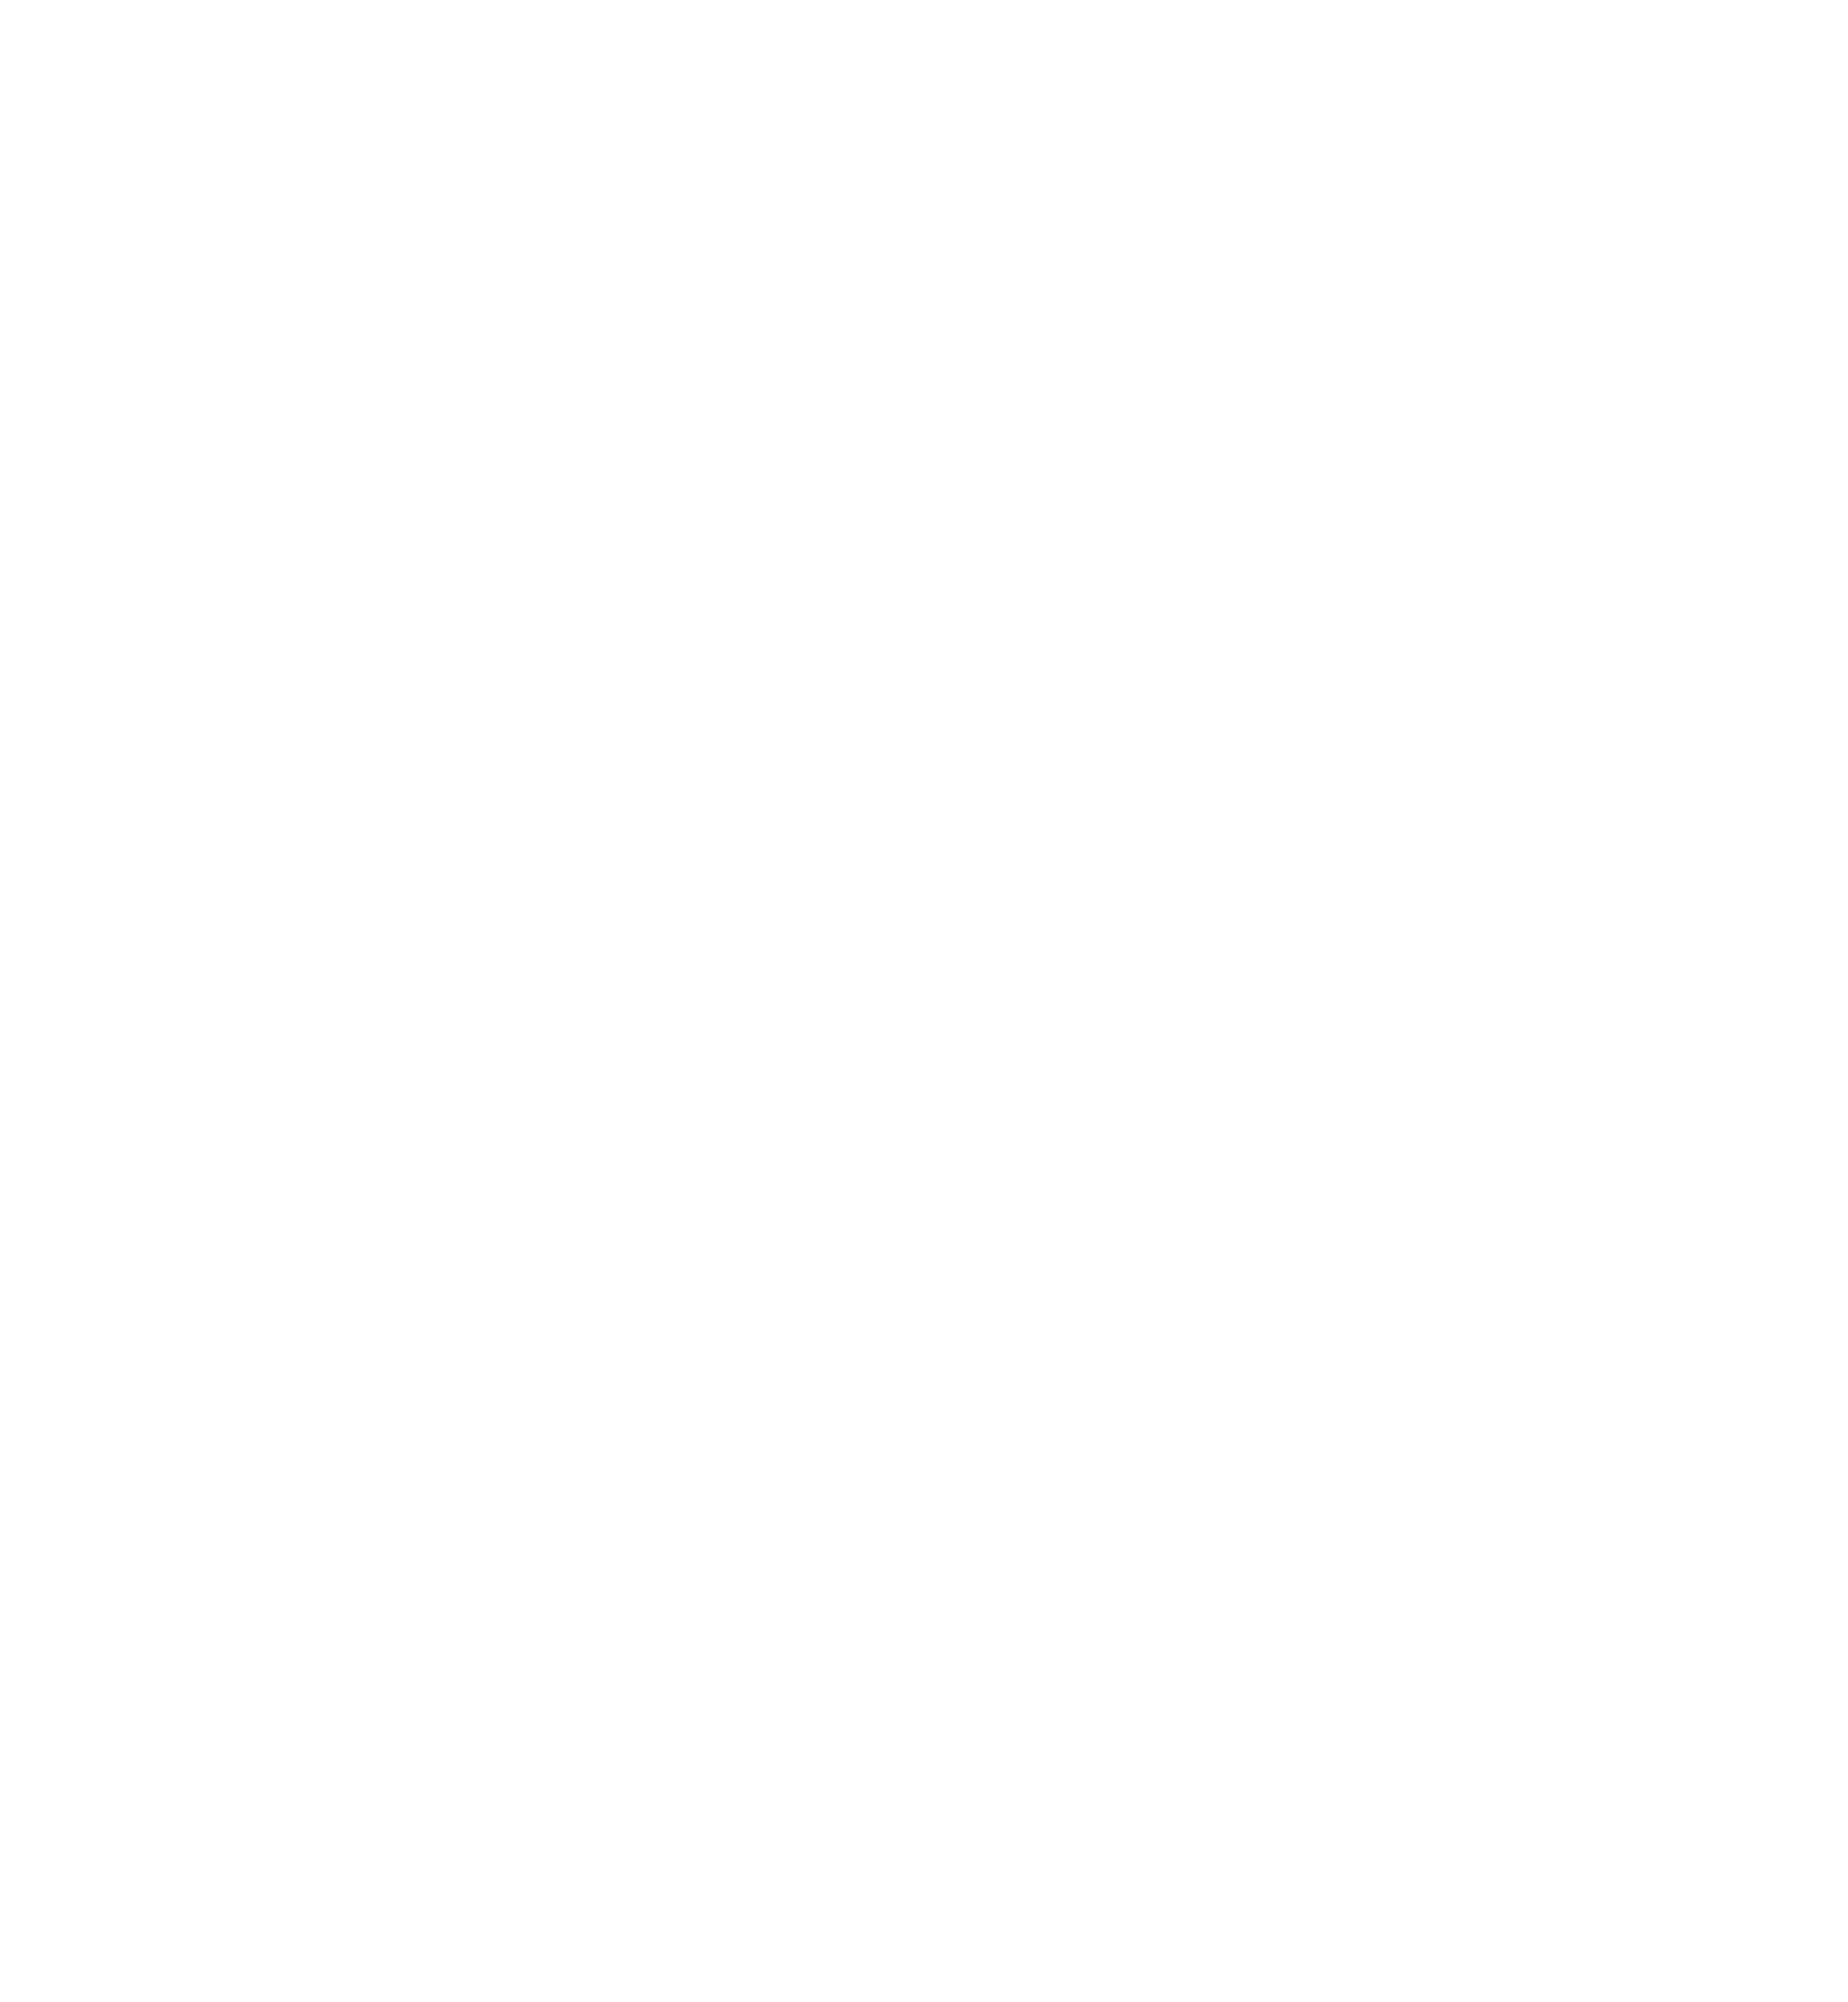 DCMB